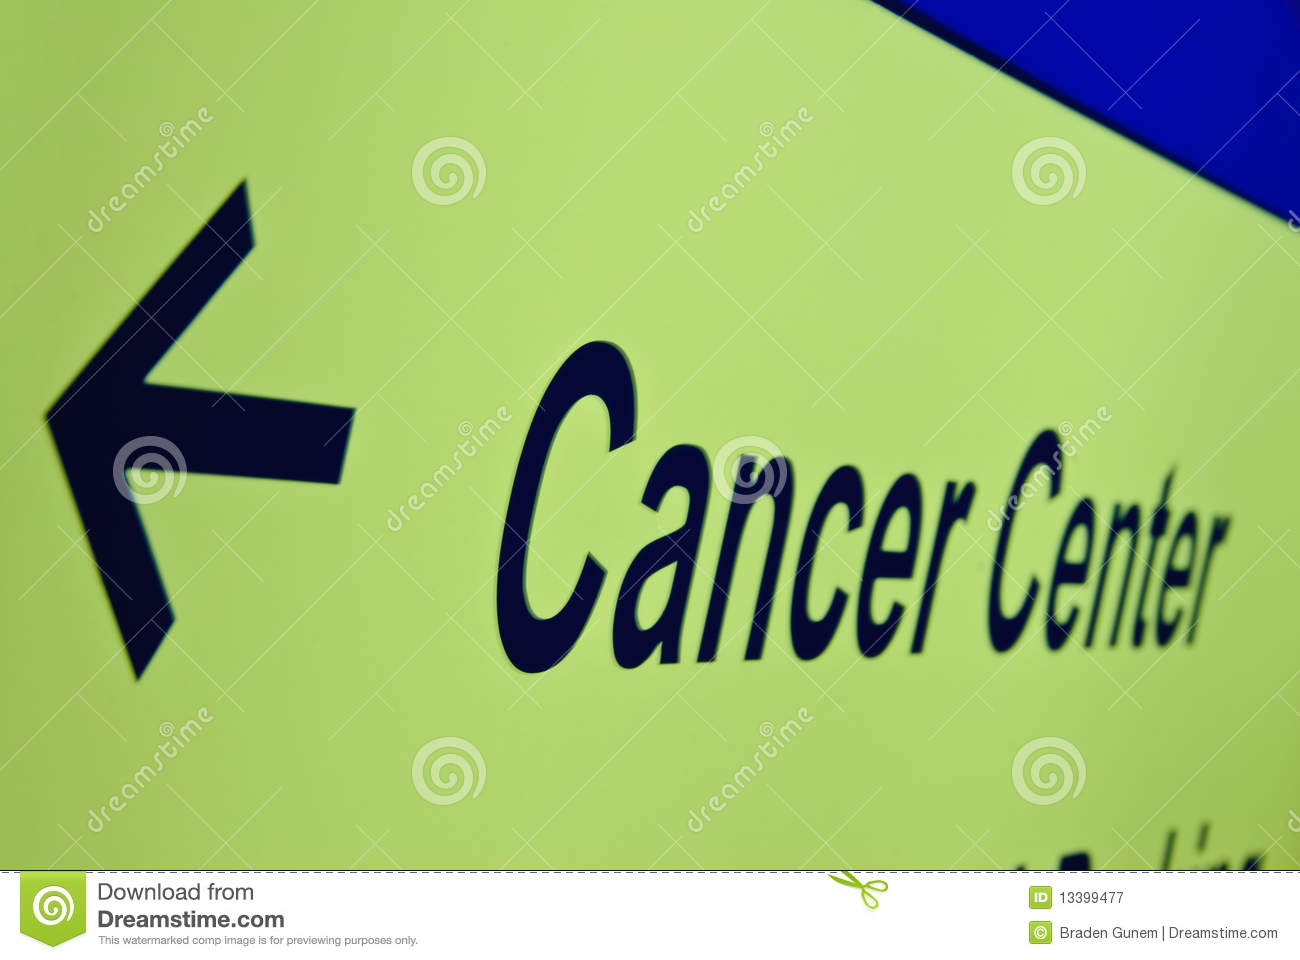 cancer-center-sign.jpg